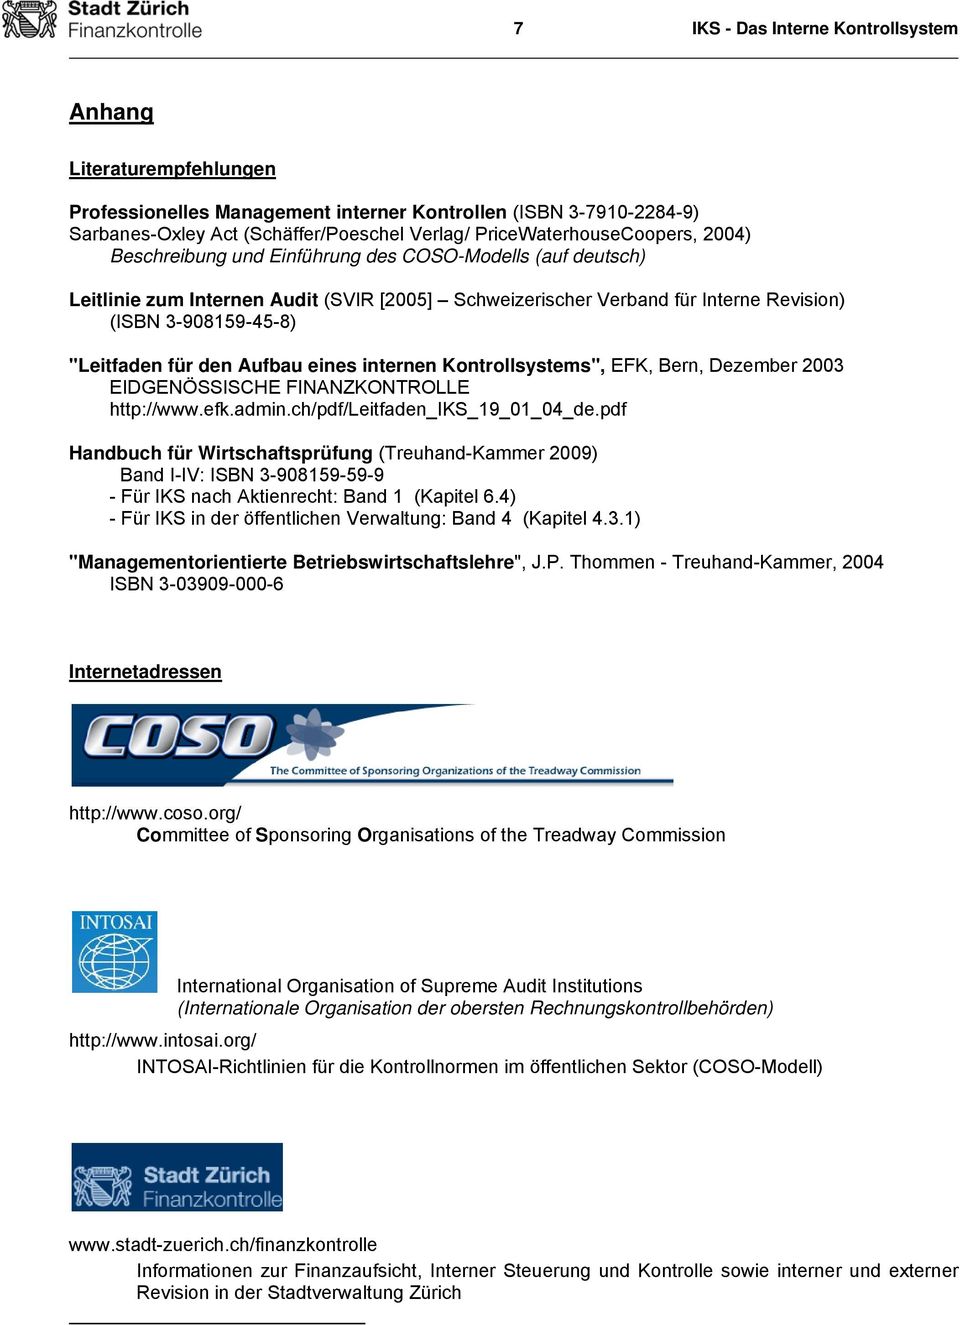 "Leitfaden für den Aufbau eines internen Kontrollsystems", EFK, Bern, Dezember 2003 EIDGENÖSSISCHE FINANZKONTROLLE http://www.efk.admin.ch/pdf/leitfaden_iks_19_01_04_de.